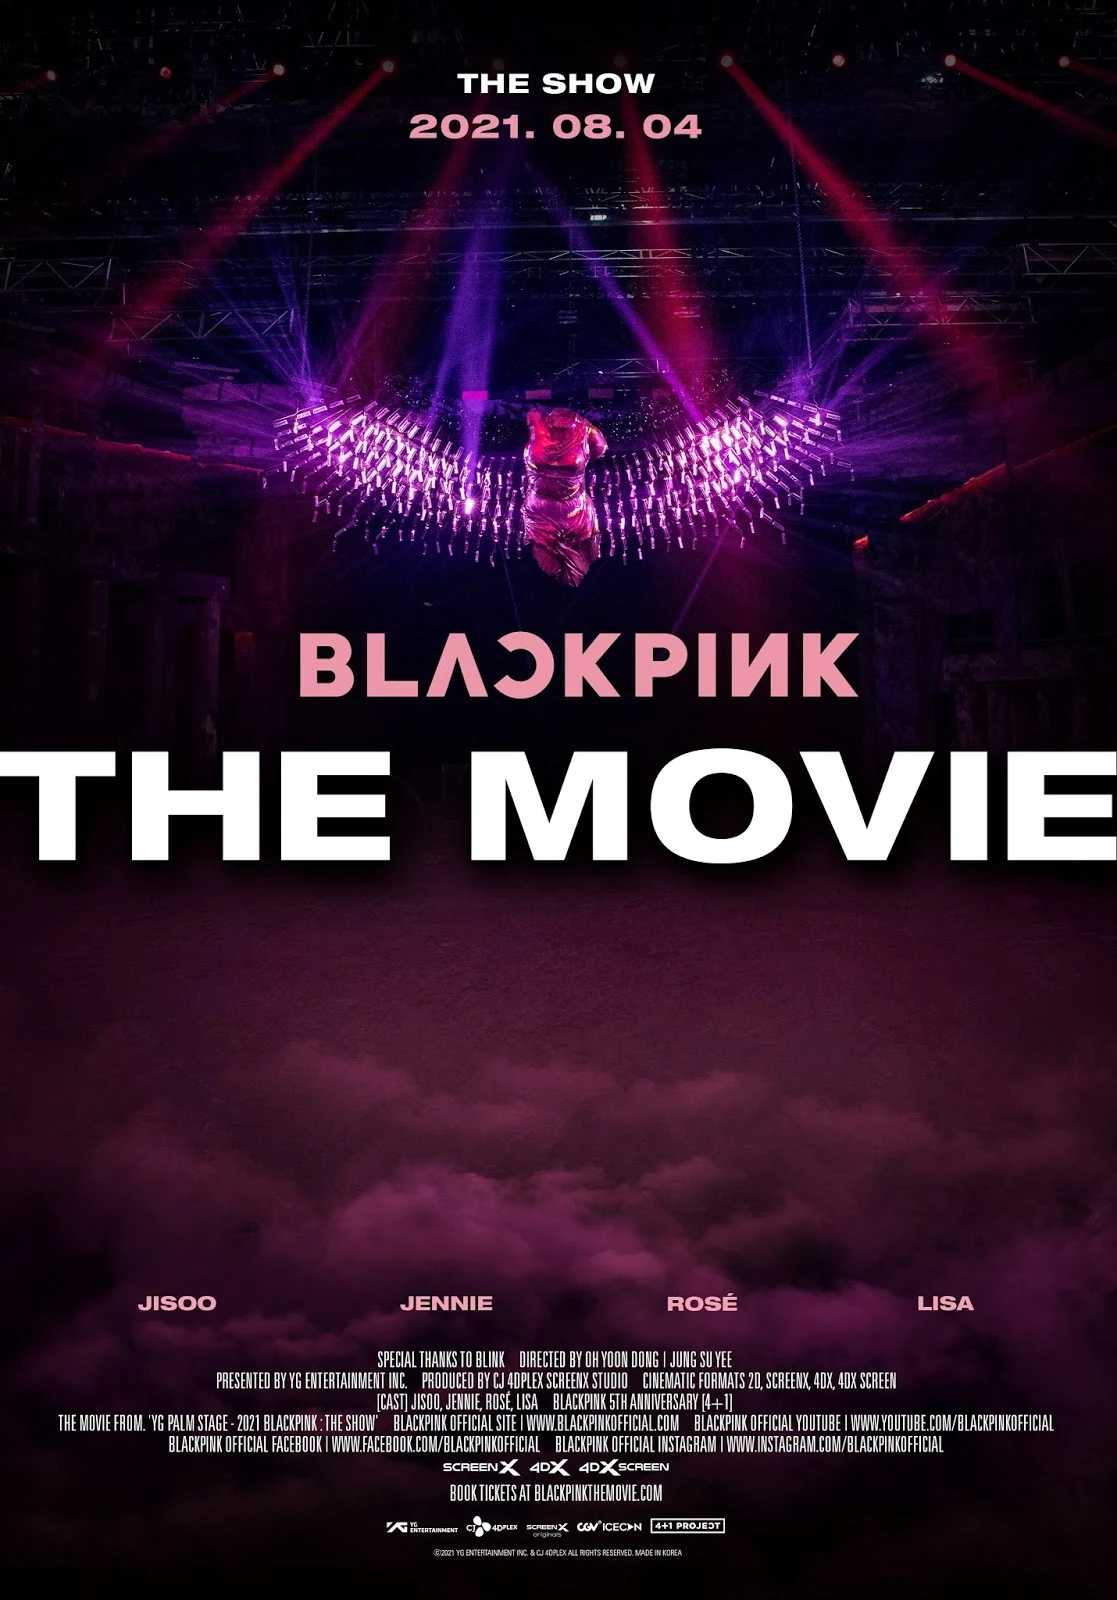 BLACKPINK The Movie, la película de BLACKPINK de K-Pop del 2021